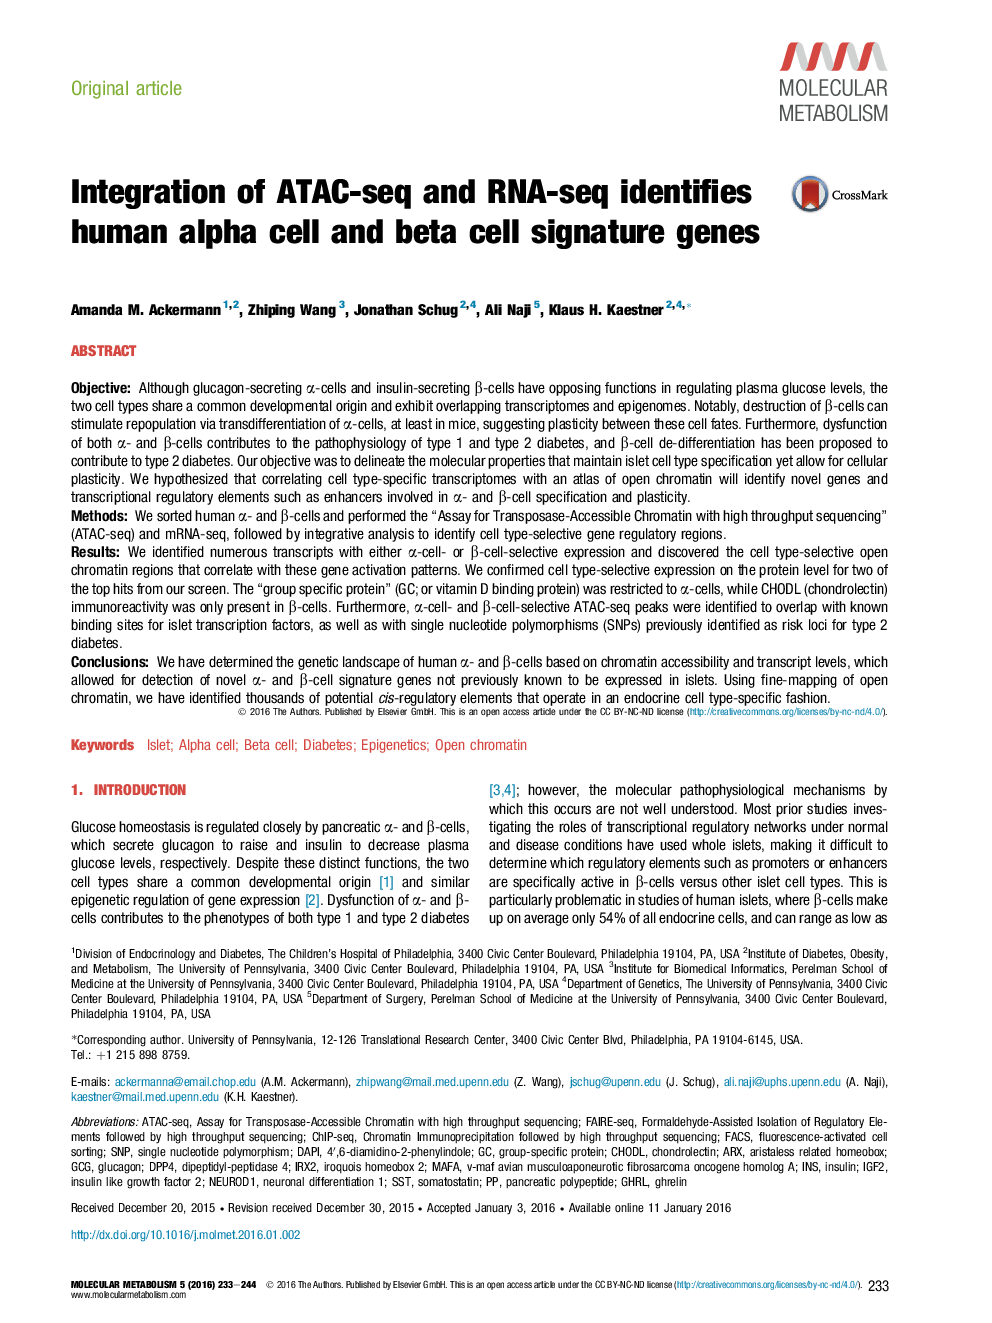 ادغام ATAC-seq و RNA-seq ژن های امضاي سلول های آلفا و بتا انسان را شناسایی می کند